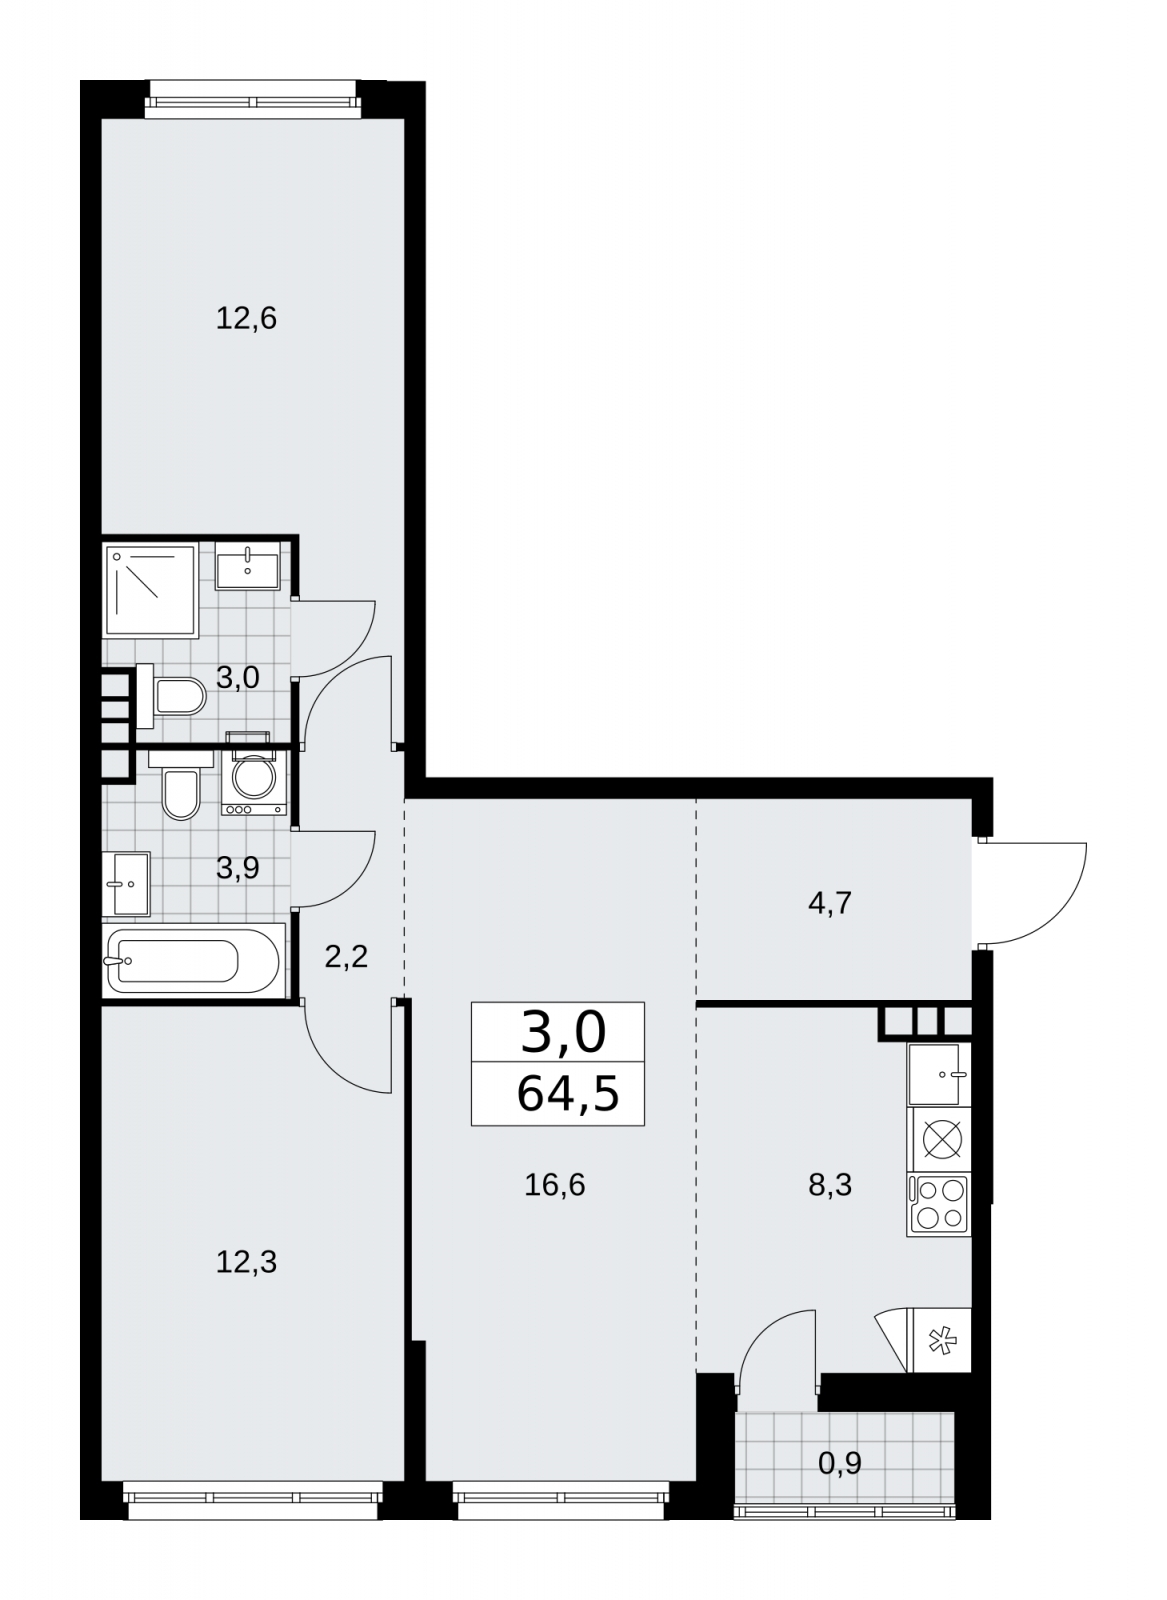 Продается трехкомнатная квартира с европланировкой с отделкой в новом ЖК, недалеко от метро